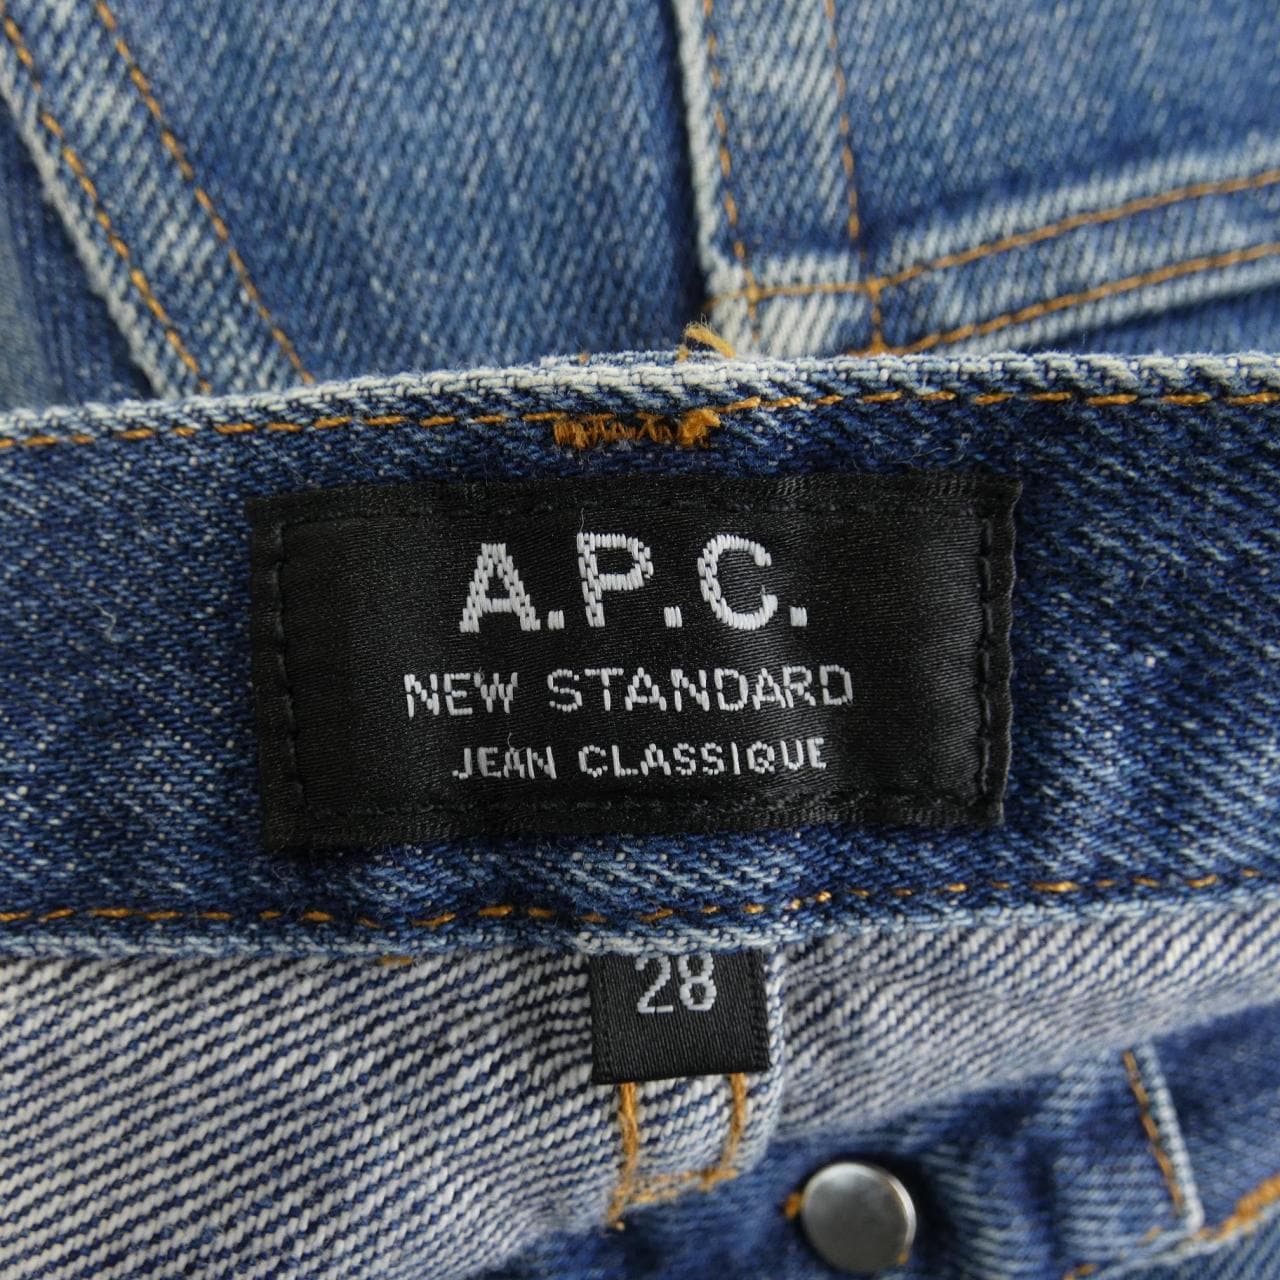 Apse APC Jeans